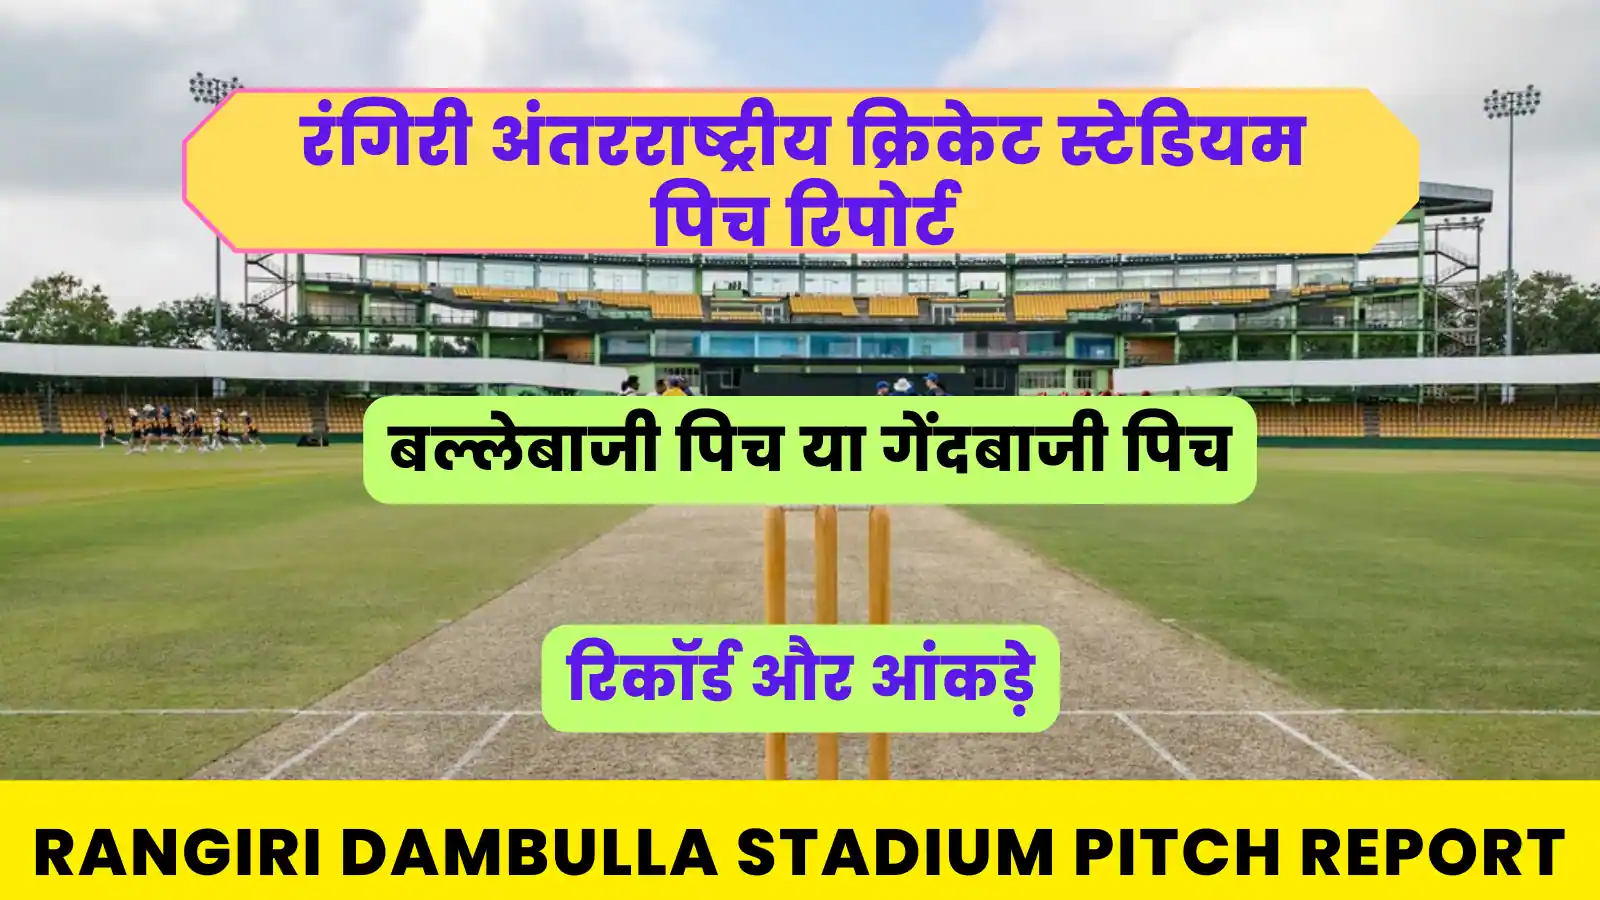 Rangiri Dambulla Stadium Pitch Report Hindi